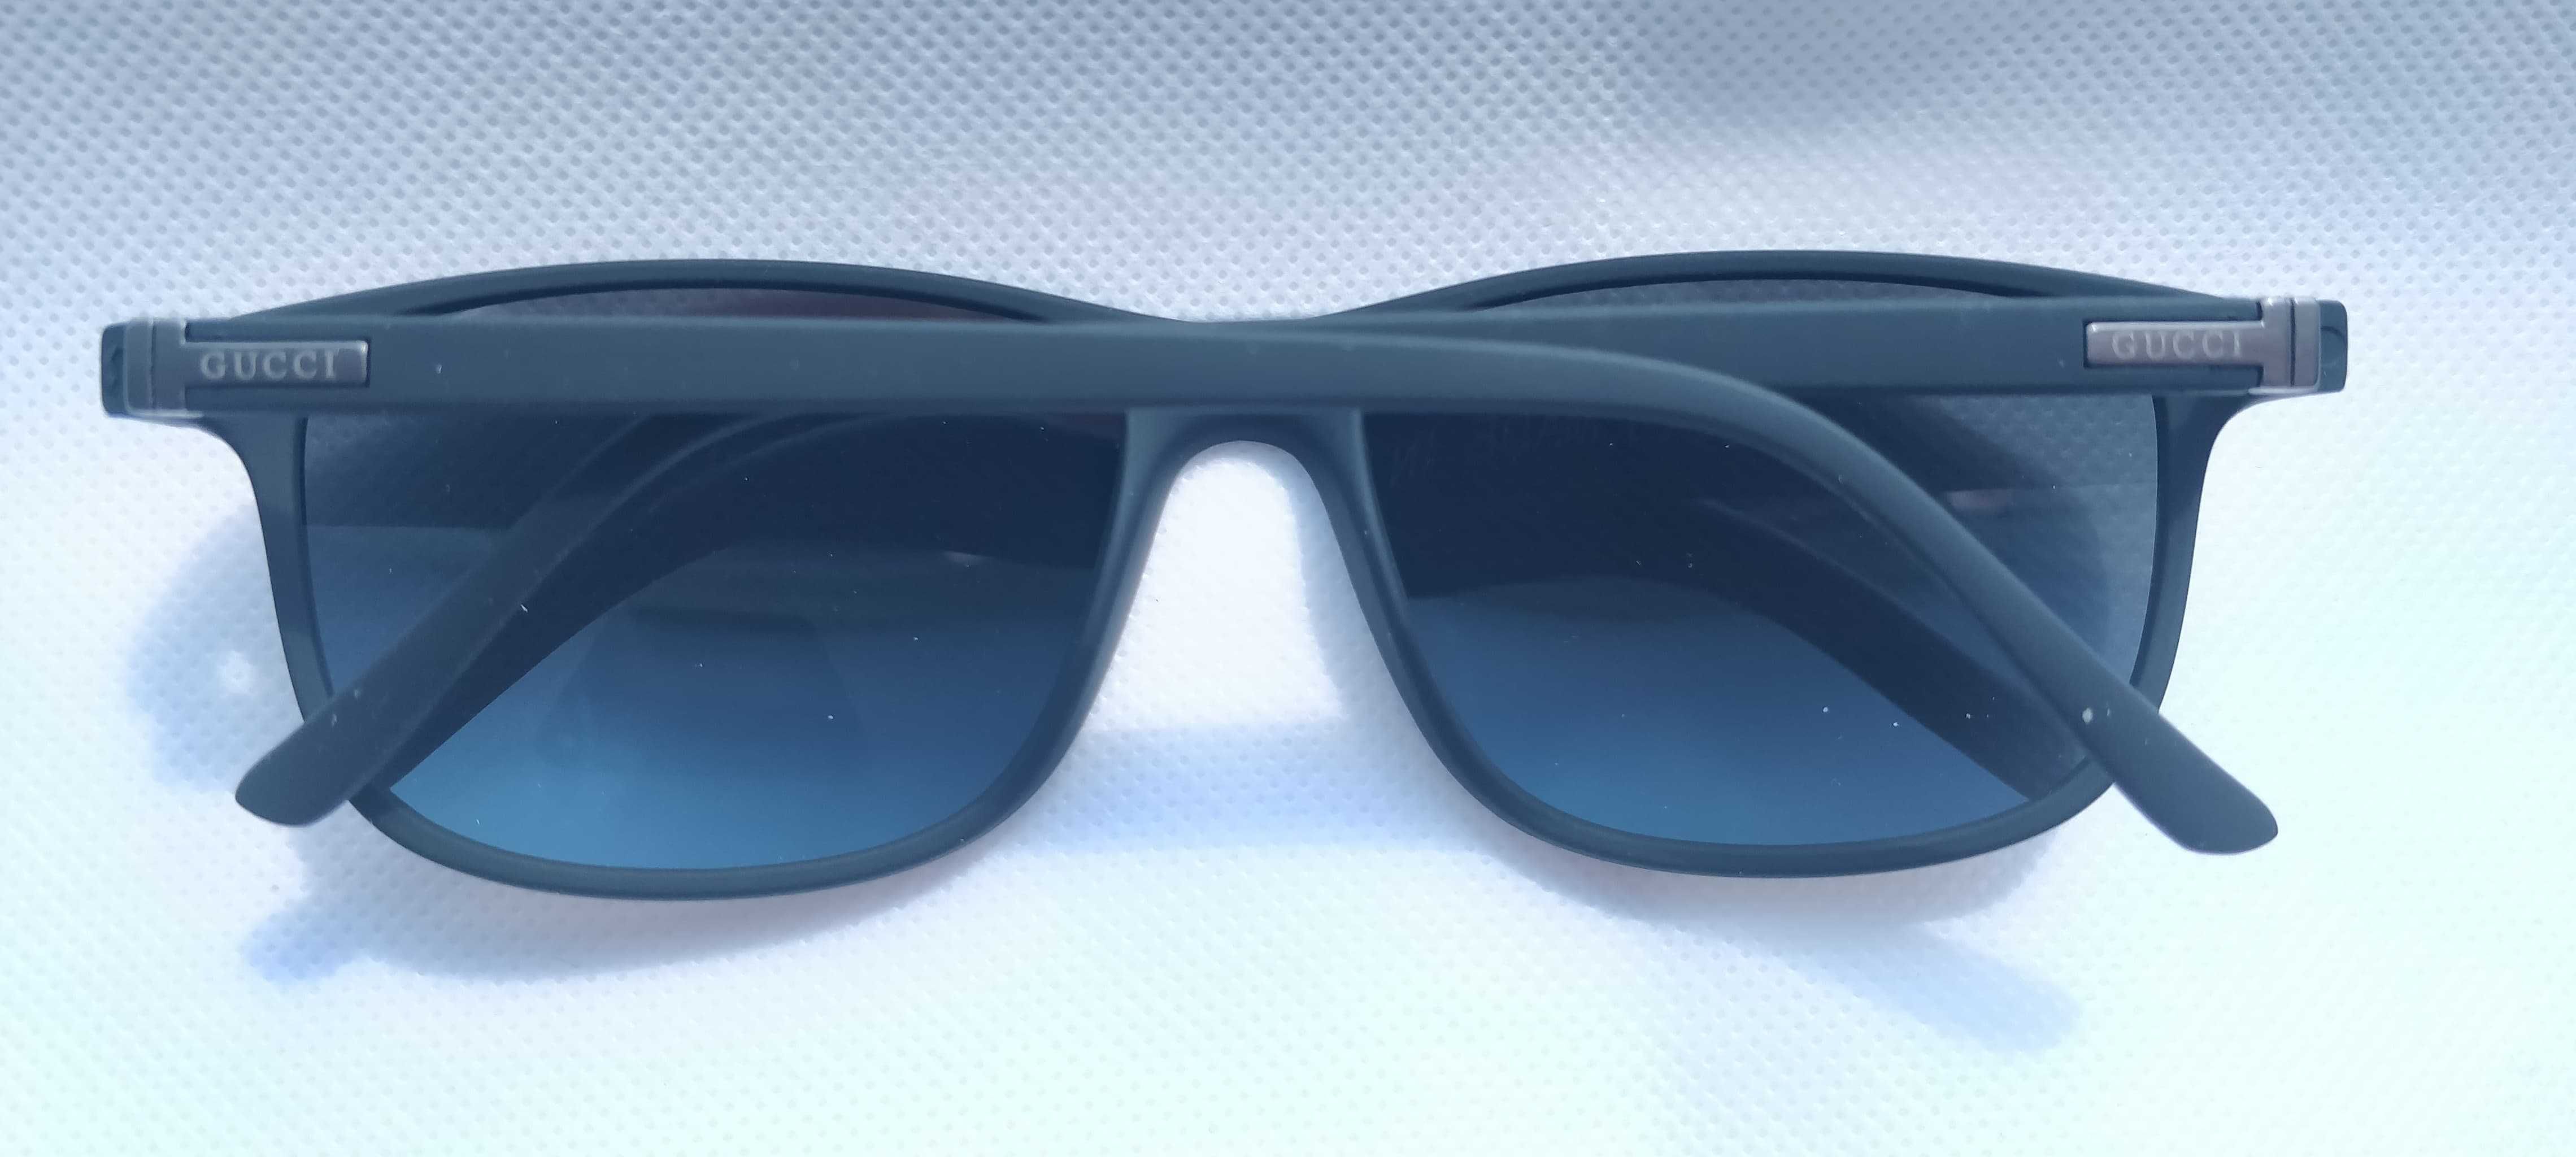 Ochelari de soare Gucci model 2, lentile negre polarizate